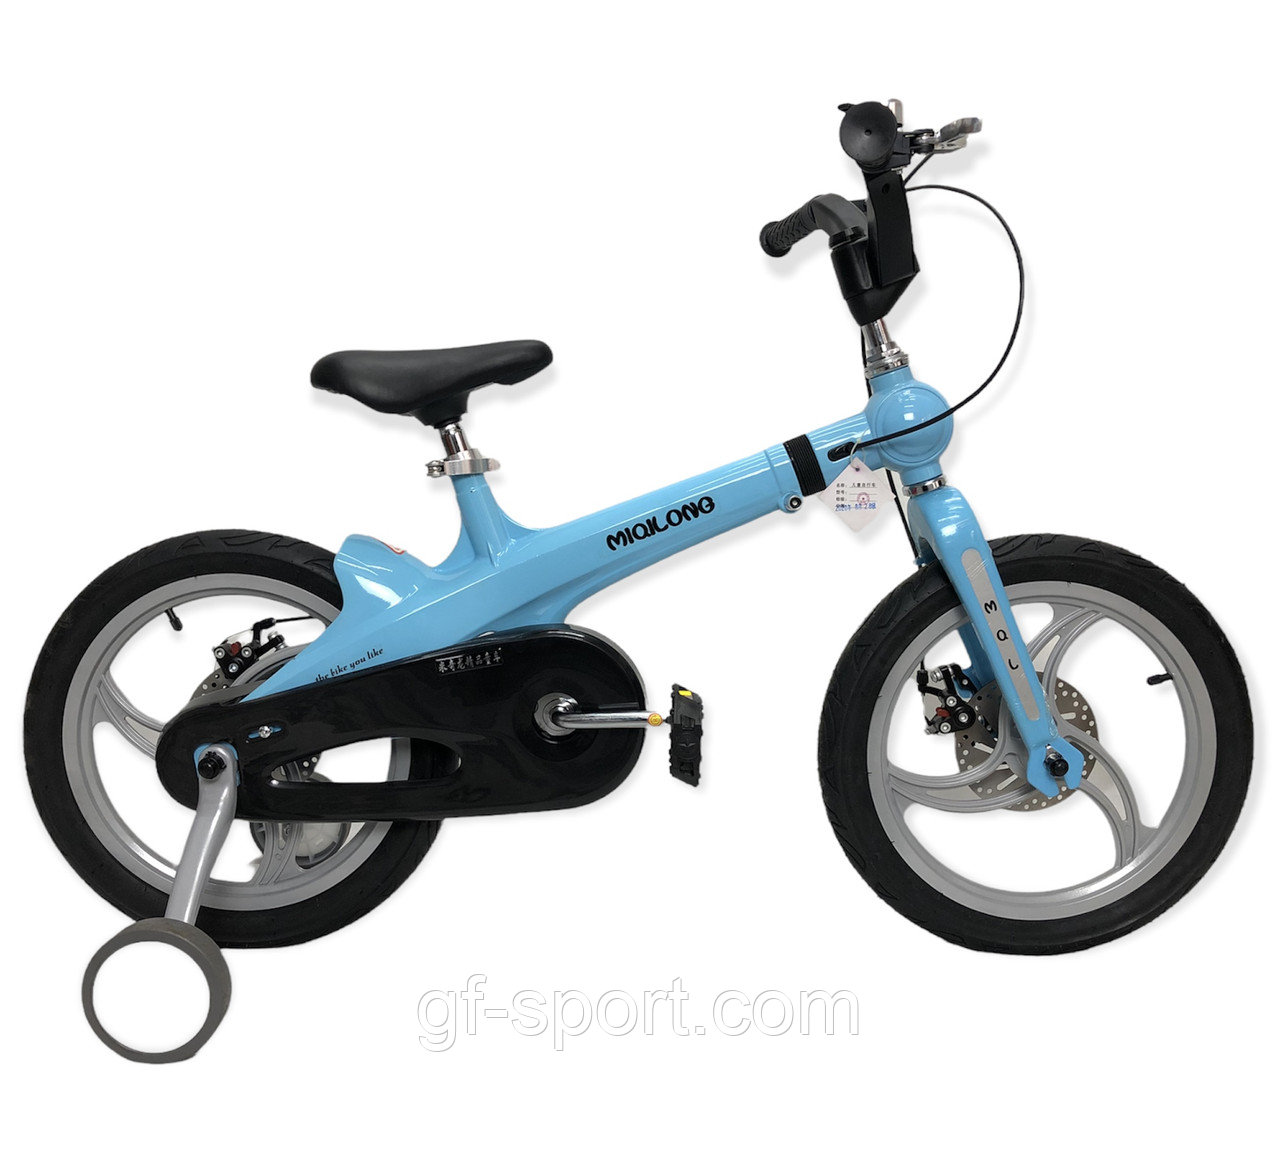 Велосипед MiQilong алюминиевый с раздвижной рамой голубой оригинал детский с холостым ходом 16 размер (535-16), фото 1